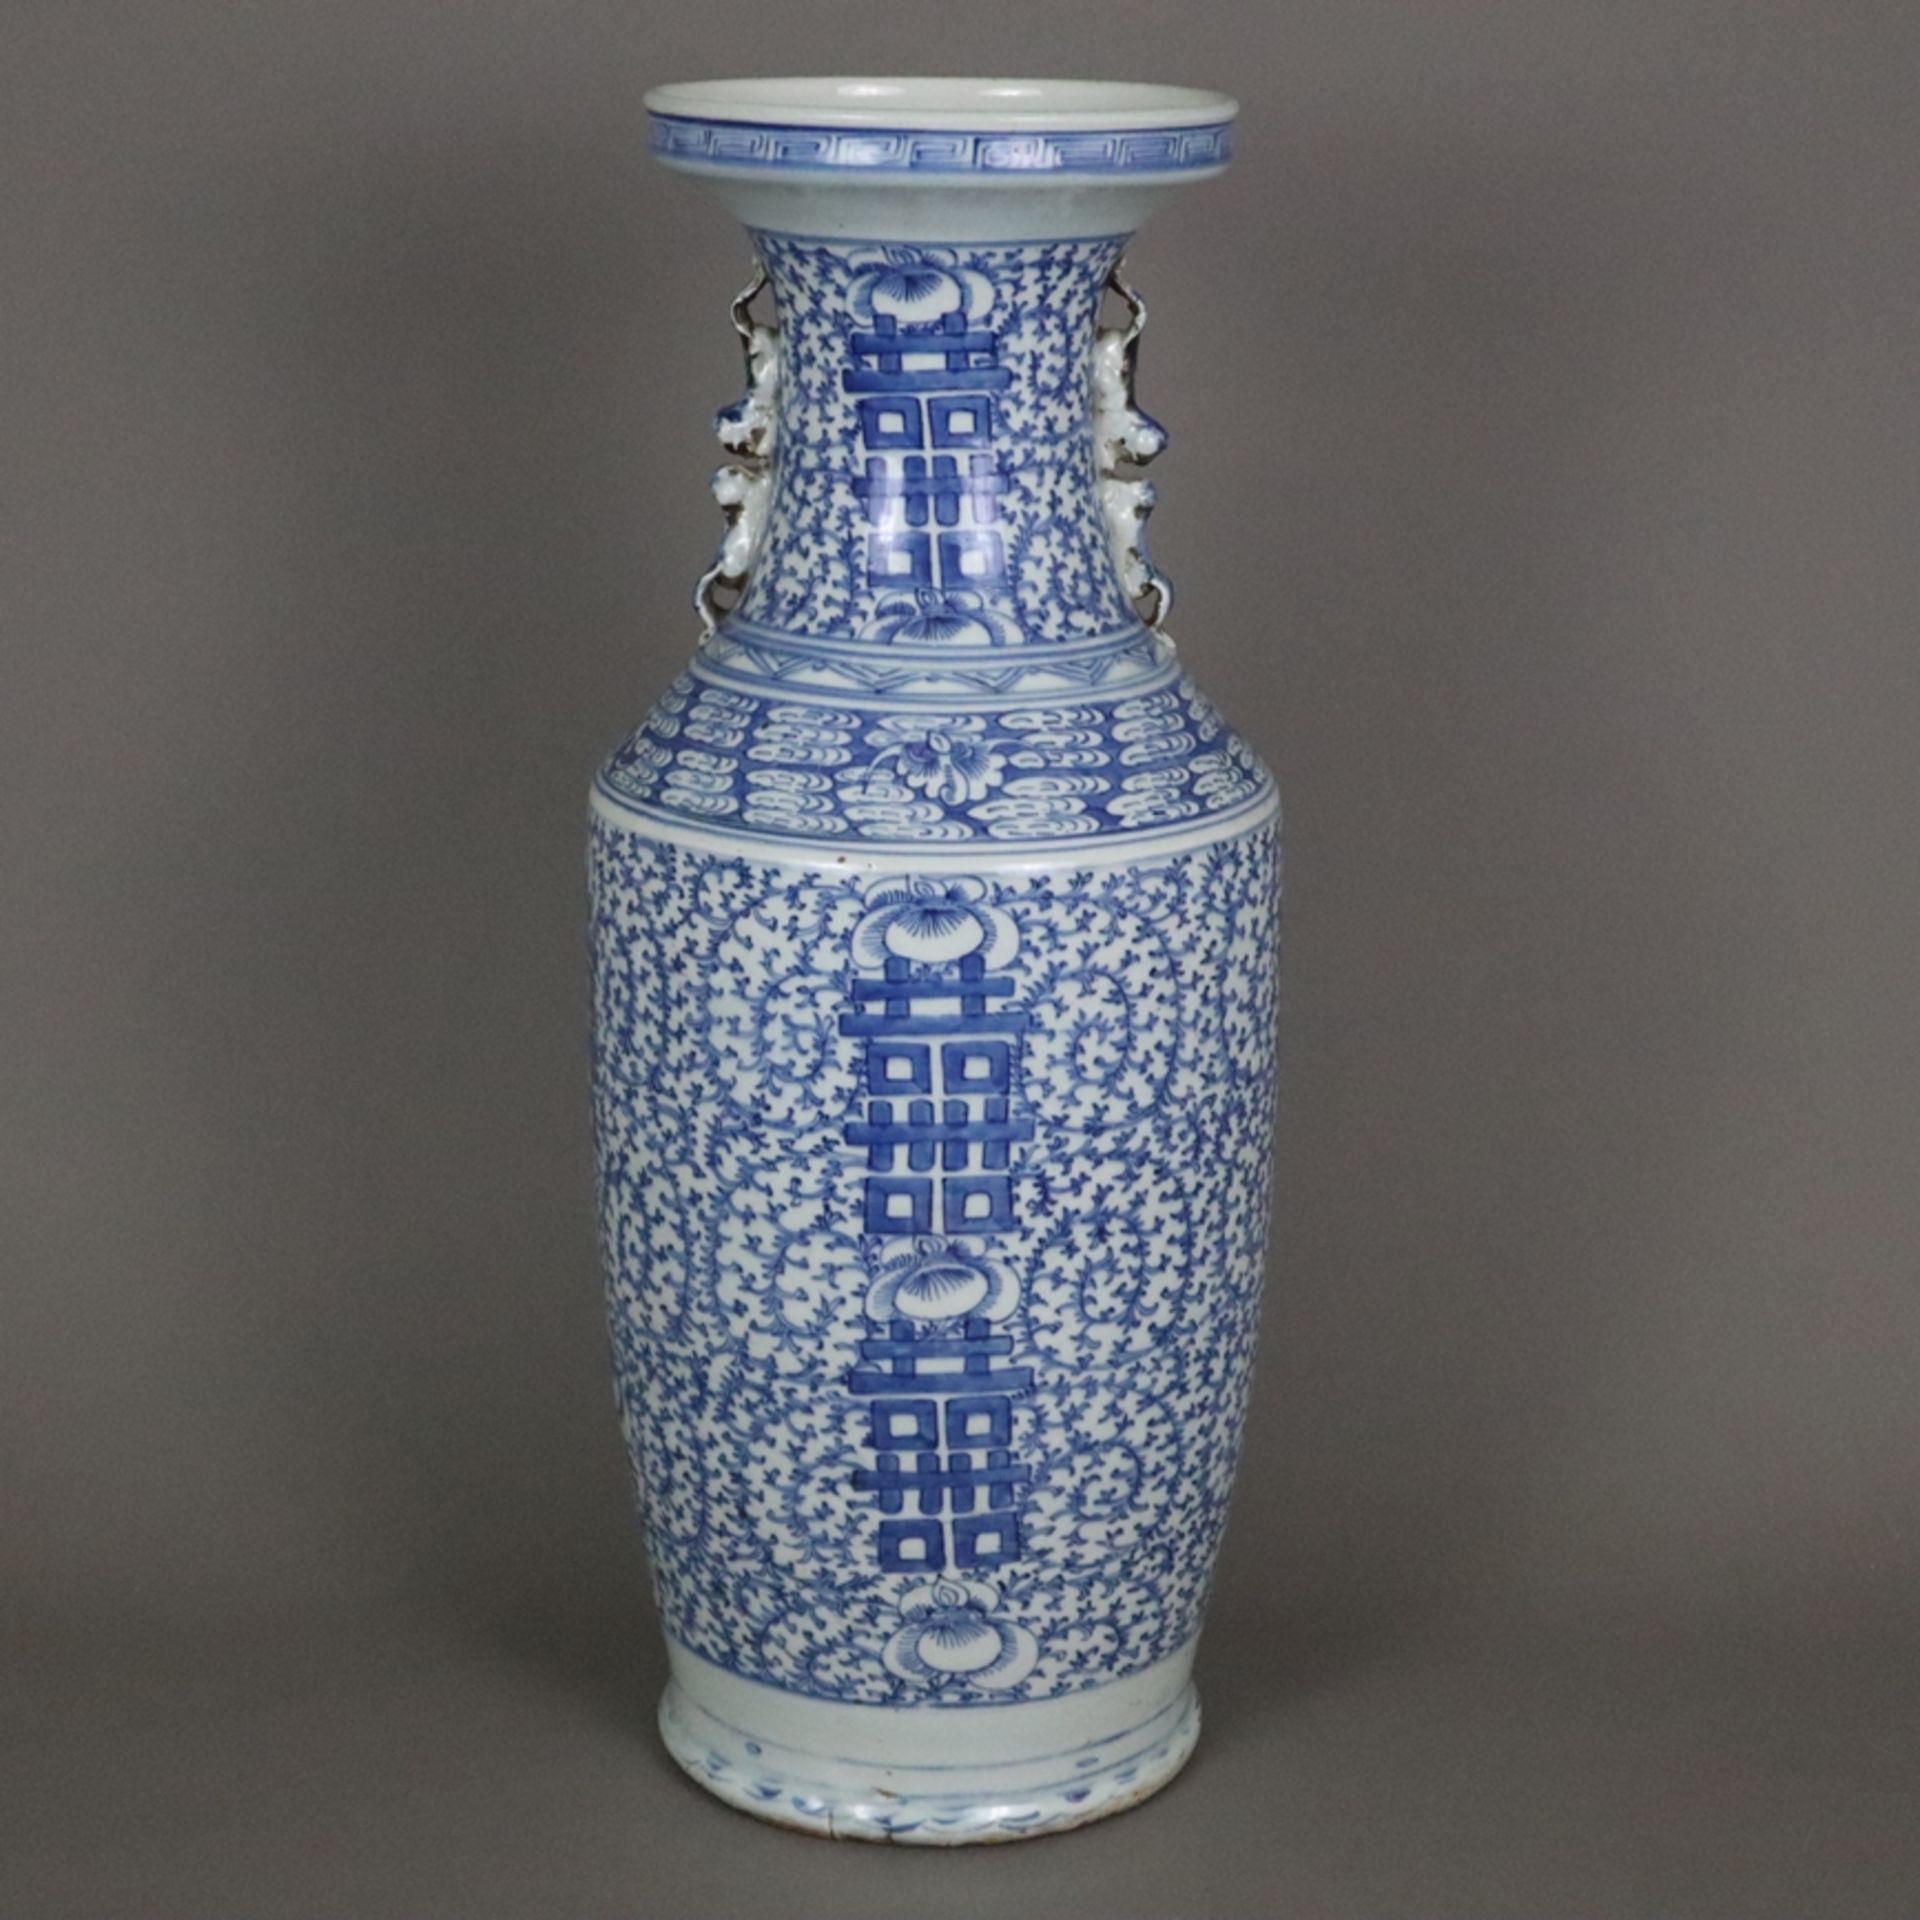 Blau-weiße Bodenvase - China, späte Qing-Dynastie, Tongzhi 1862-1875, sog. „Hochzeitsvase“, auf der